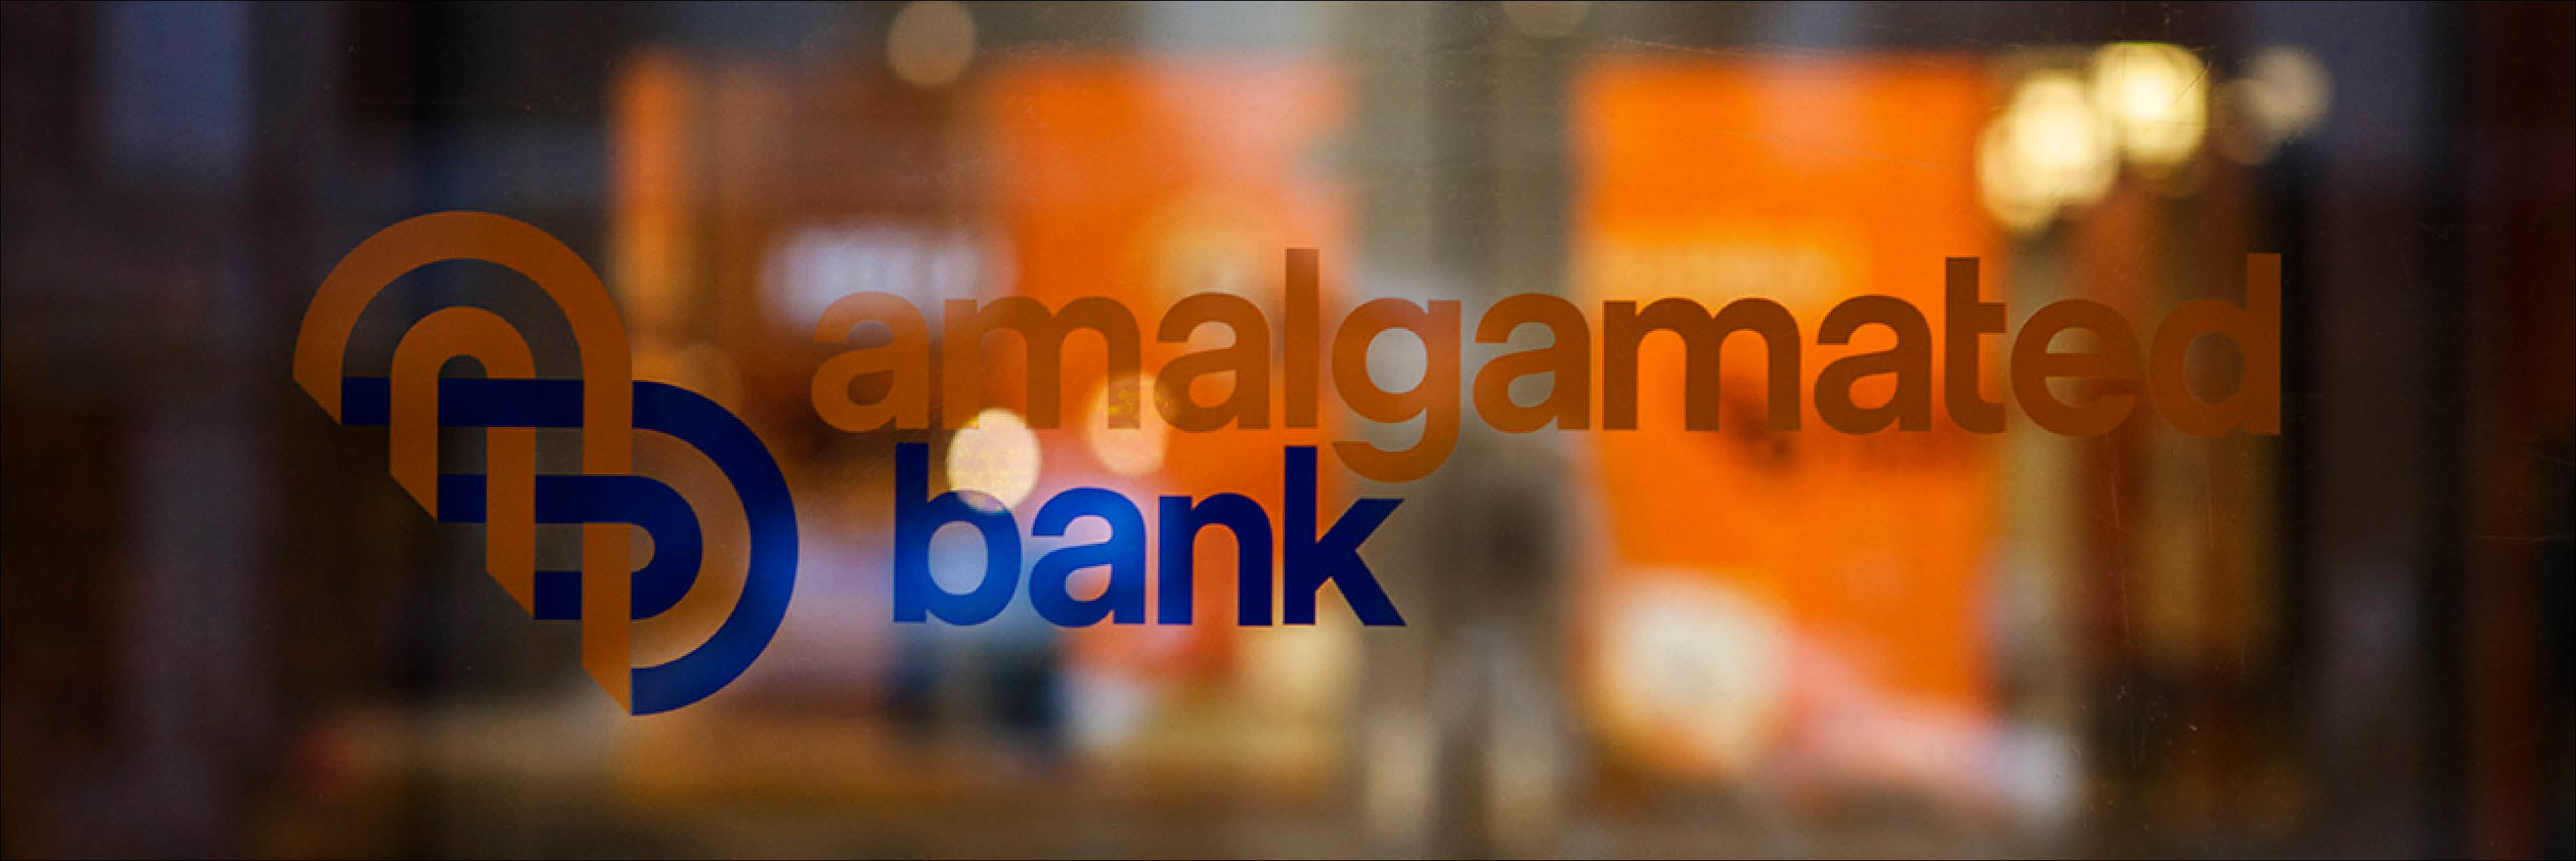 Photo of Amalgamated Bank logo on glass